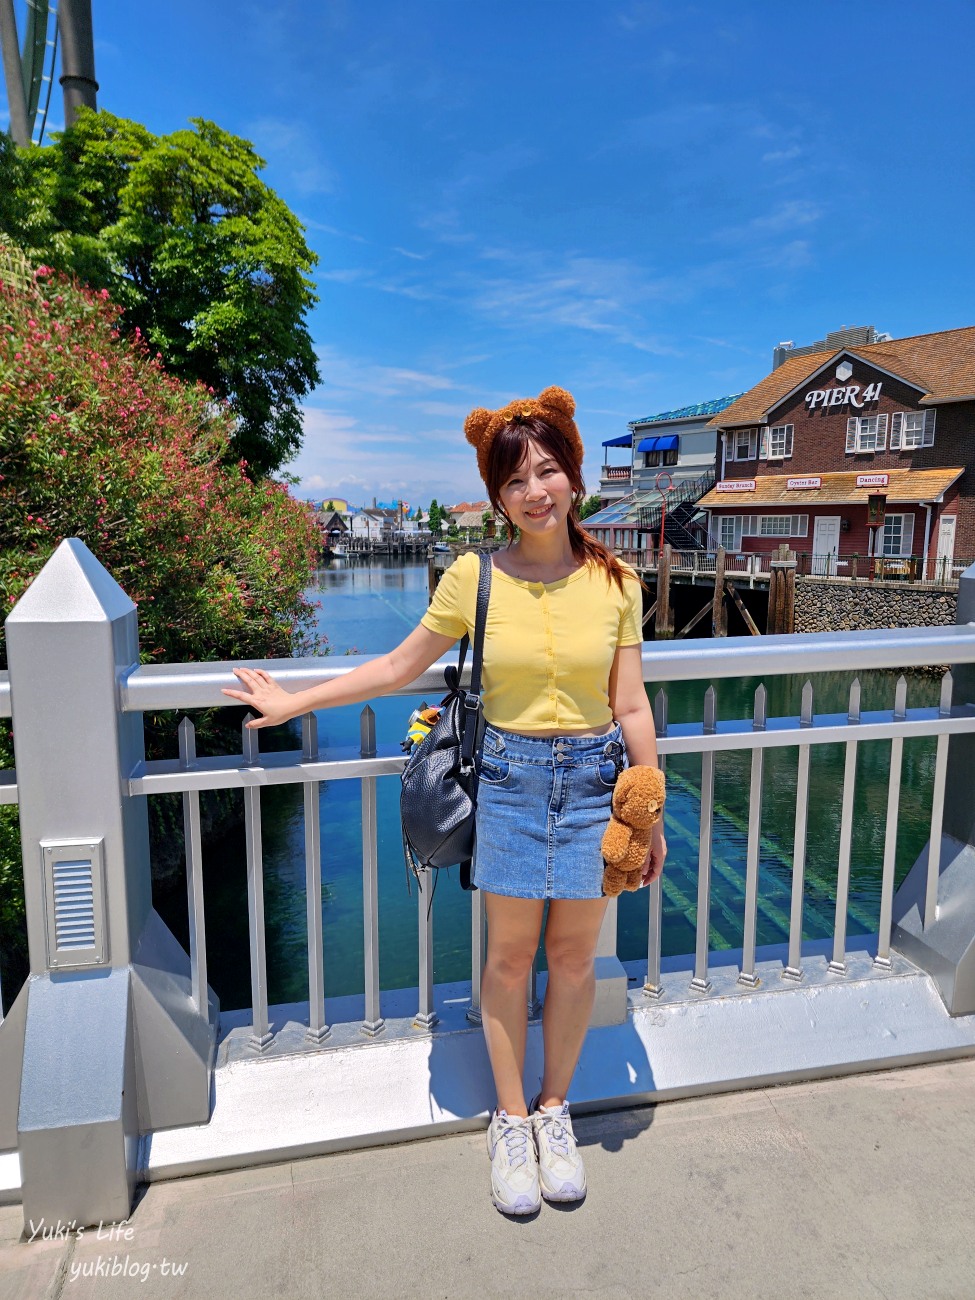 大阪親子景點【大阪環球影城】門票、必遊重點、交通方式、園區心得介紹 - yukiblog.tw